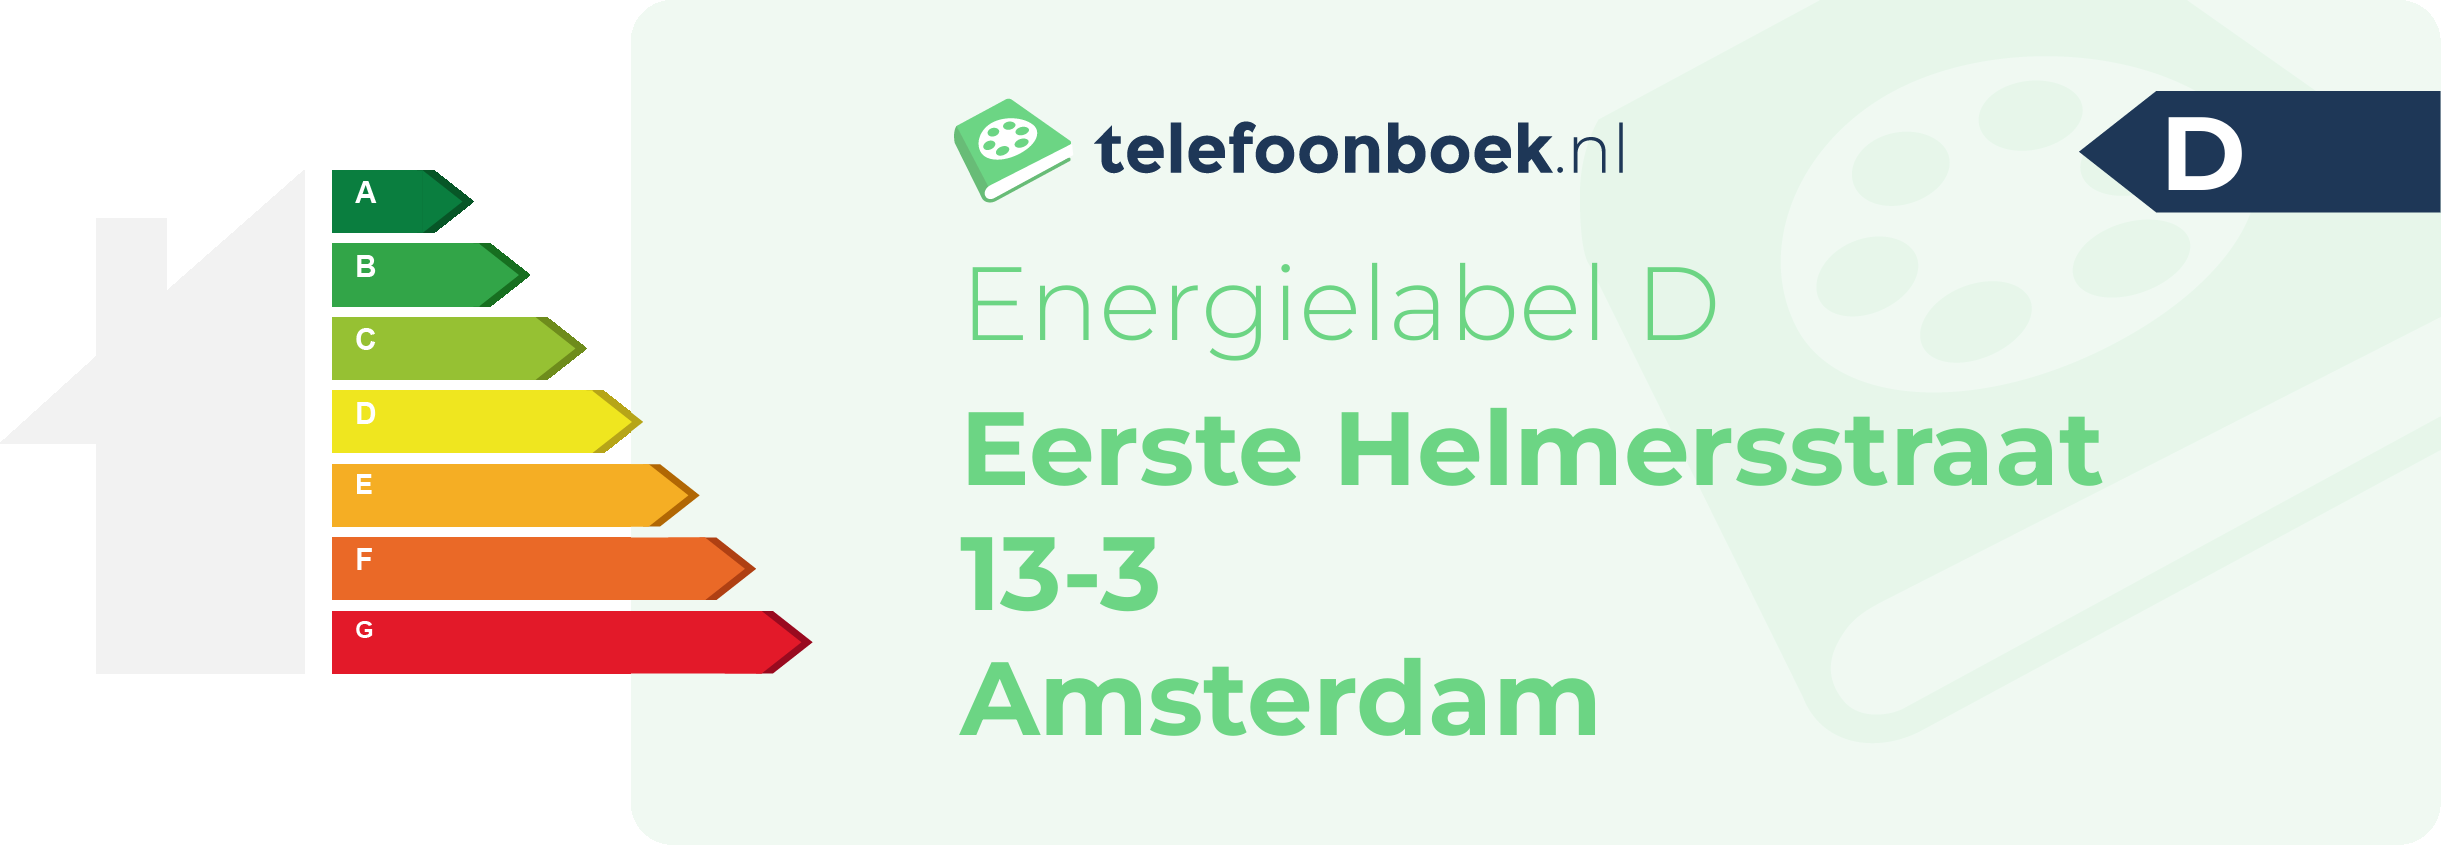 Energielabel Eerste Helmersstraat 13-3 Amsterdam